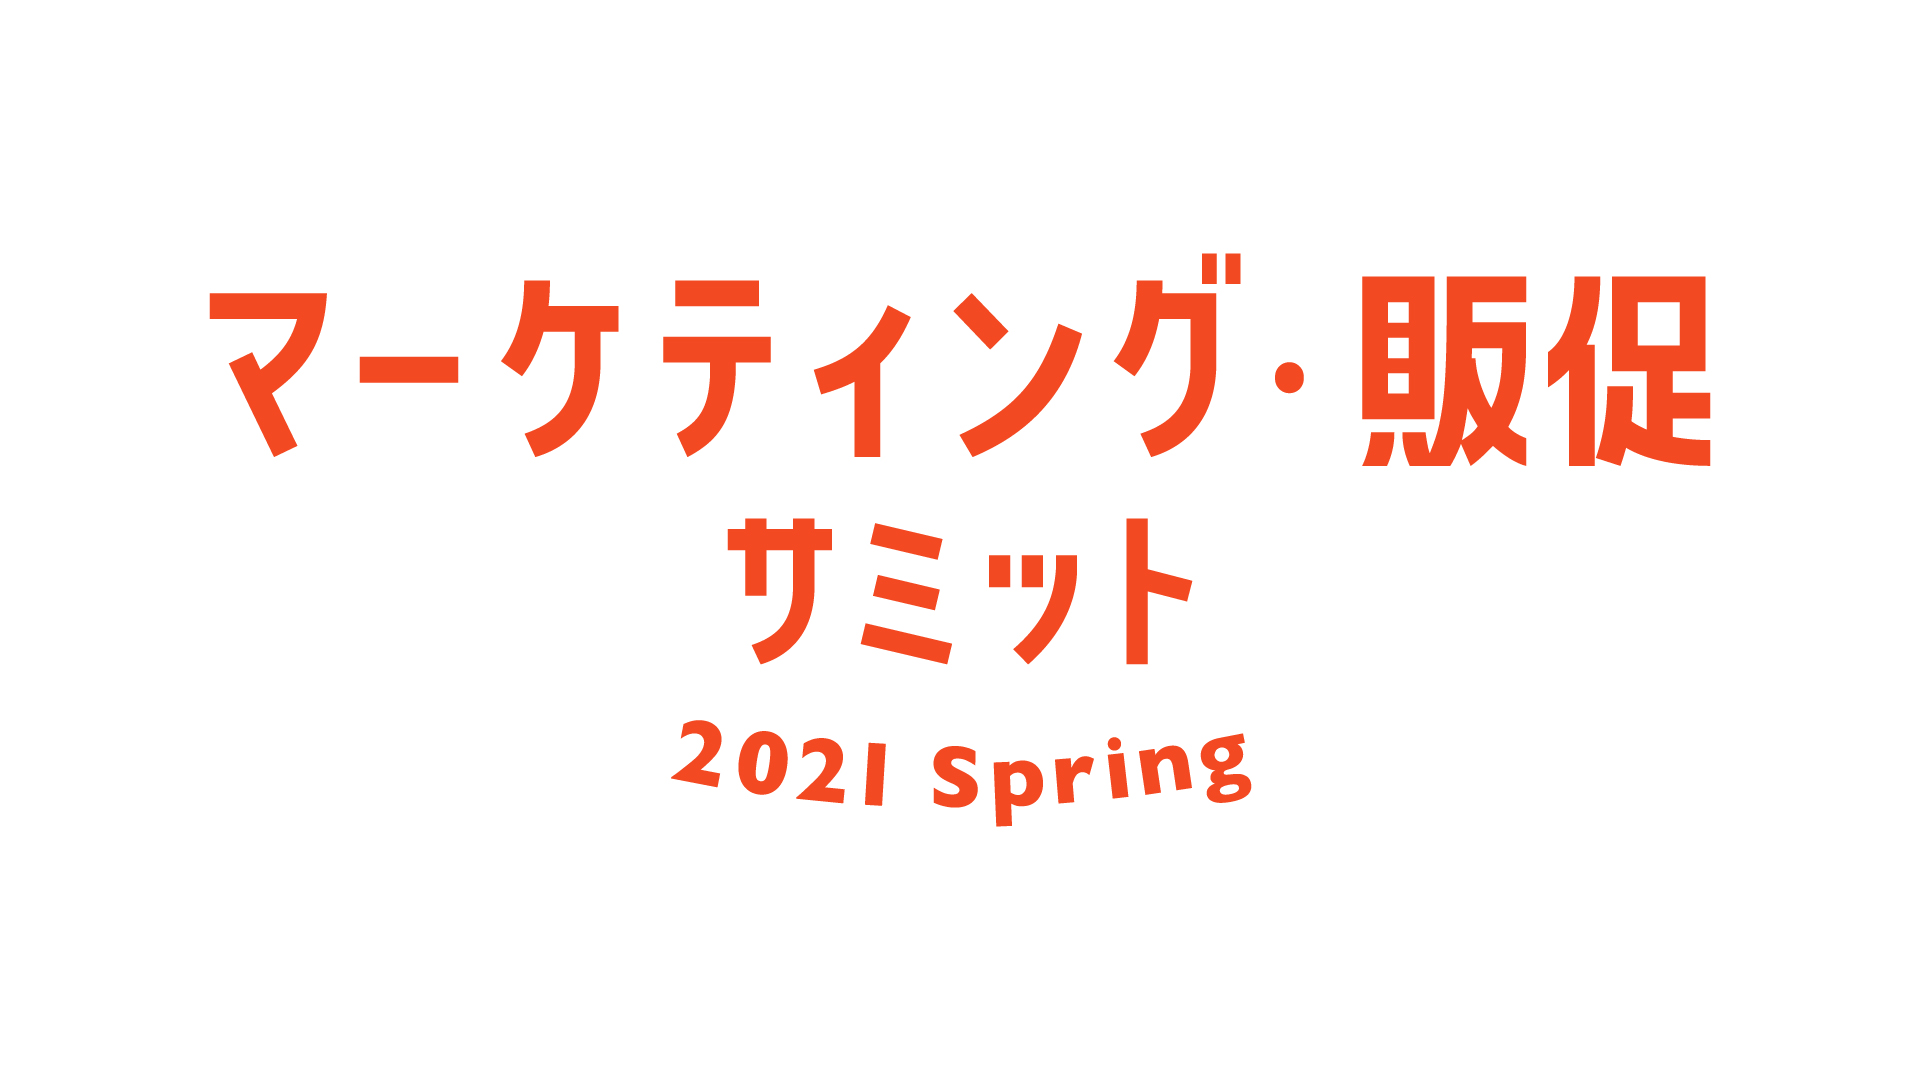 2021年5月12日〜14日 | オンライン展示会『マーケティング・販促サミット 2021 Spring』に出展いたします。